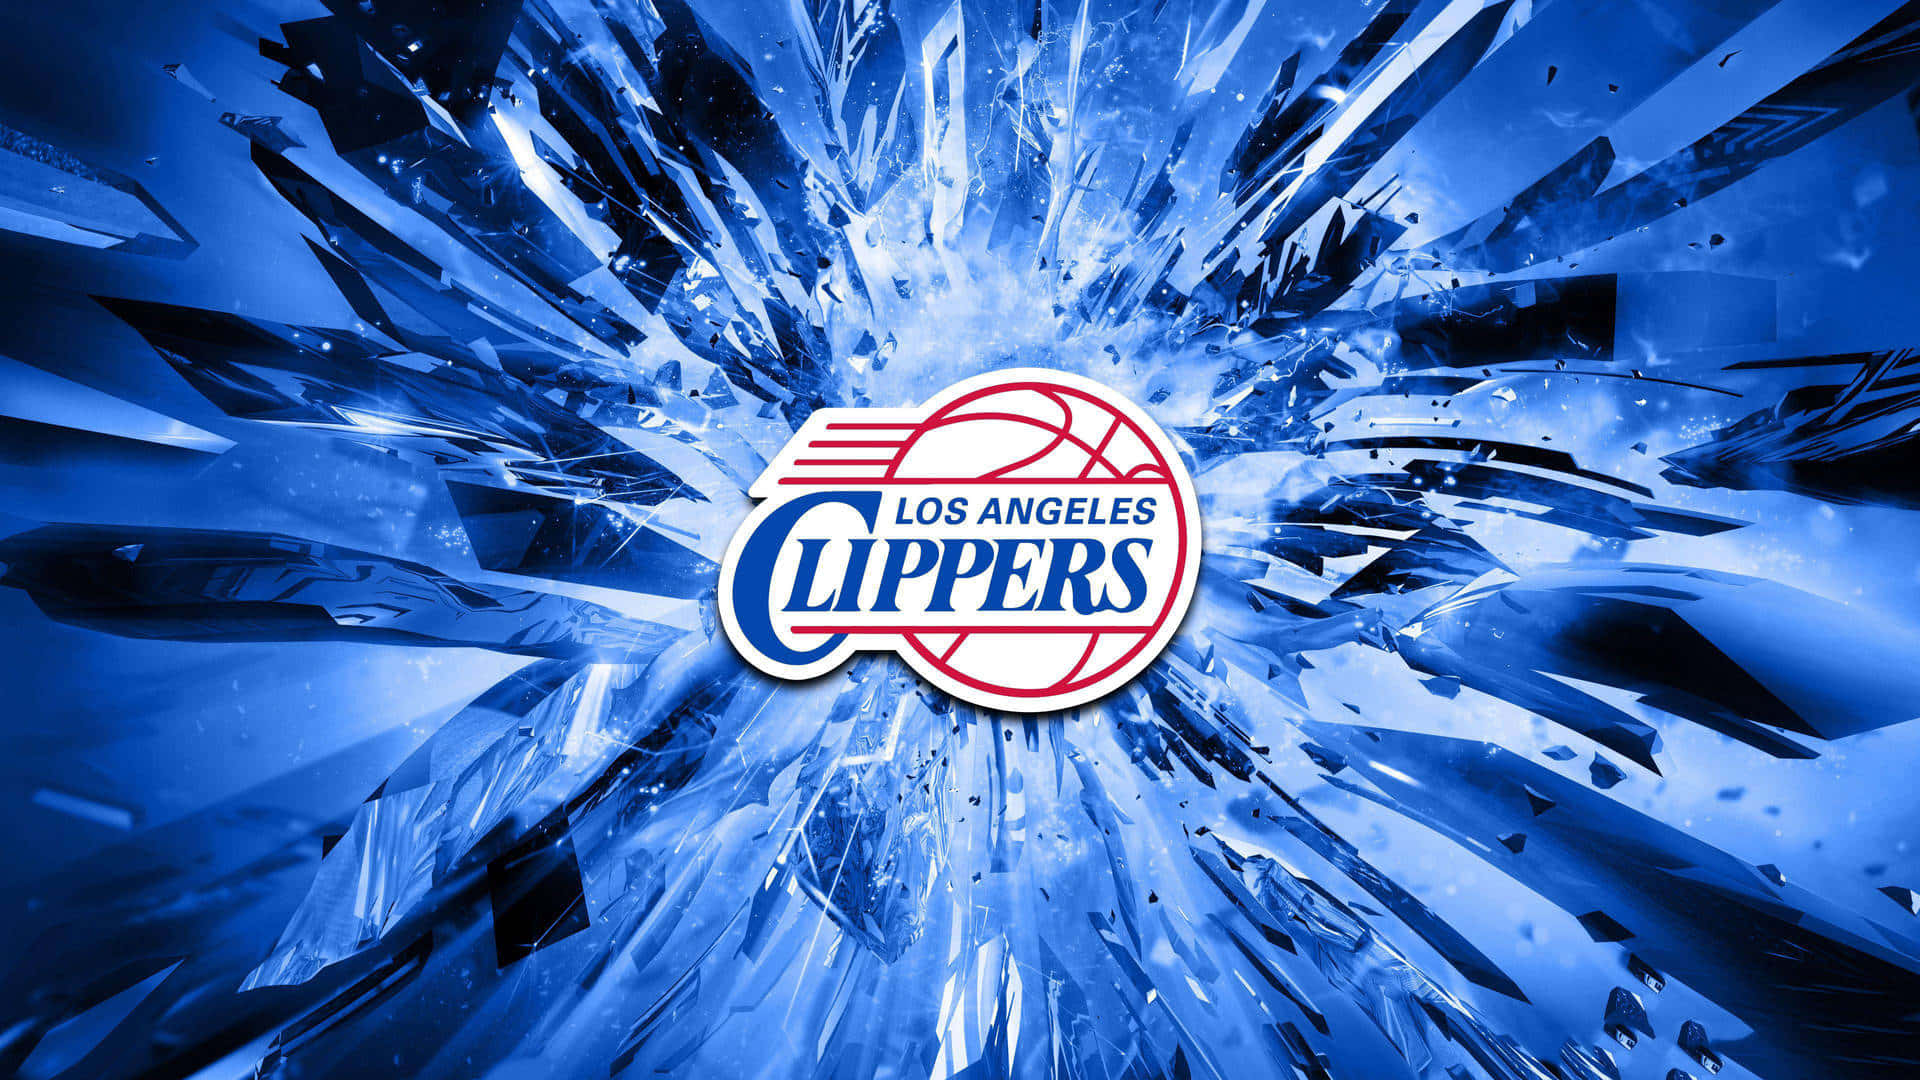 2010la Clippers Abzeichen Mit Blauen Kristallgläsern Digital Art. Wallpaper